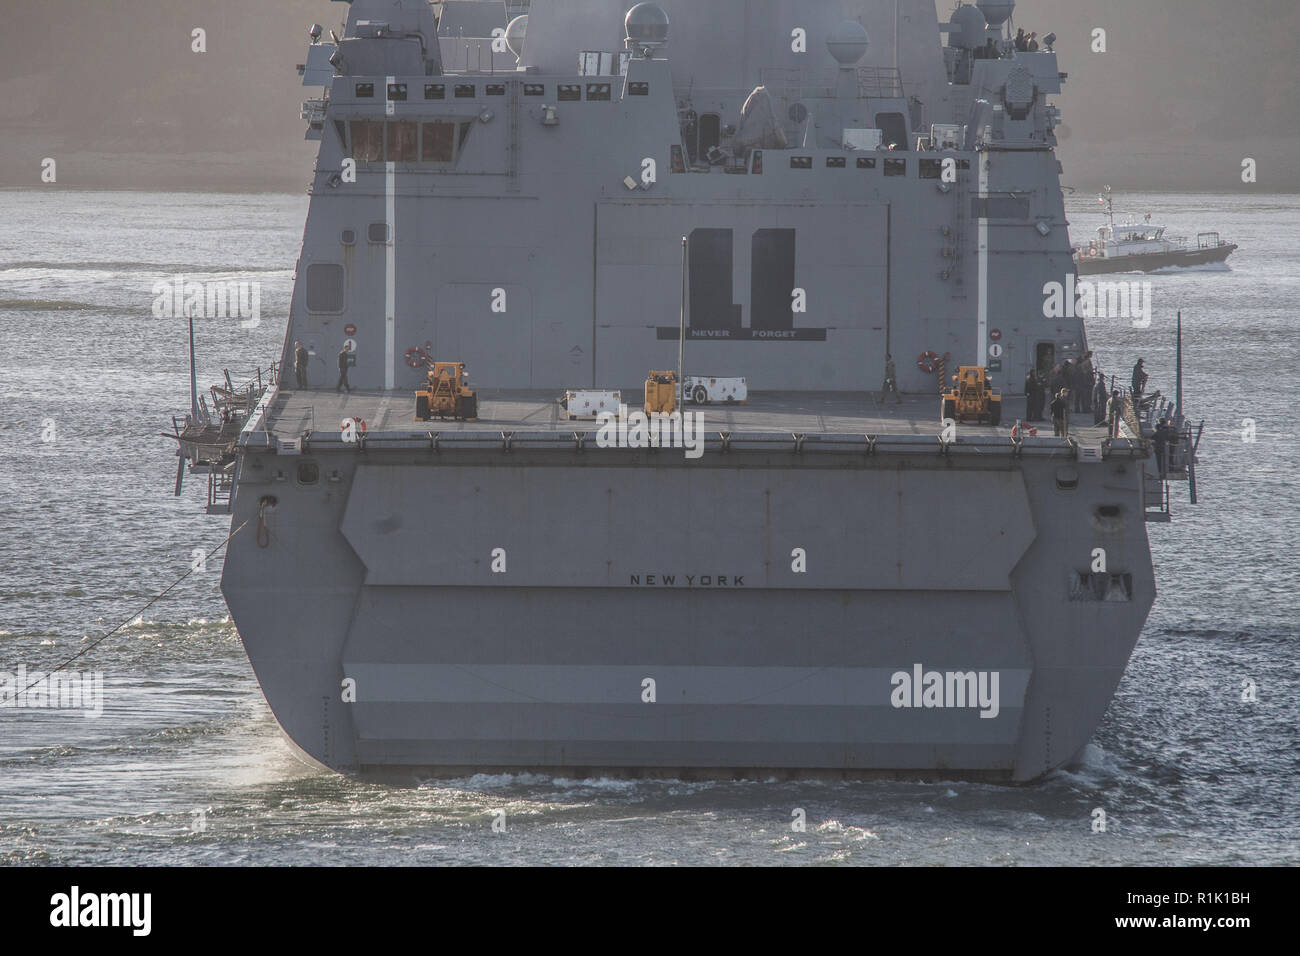 Plymouth, Reino Unido, 13 de noviembre de 2018. Hoy, por primera vez, USS New York empotran en Plymouth después de completar el ejercicio Trident coyuntura a principios de este mes. Crédito: Sam Whitfield - Ultimate Shot/Alamy Live News Foto de stock